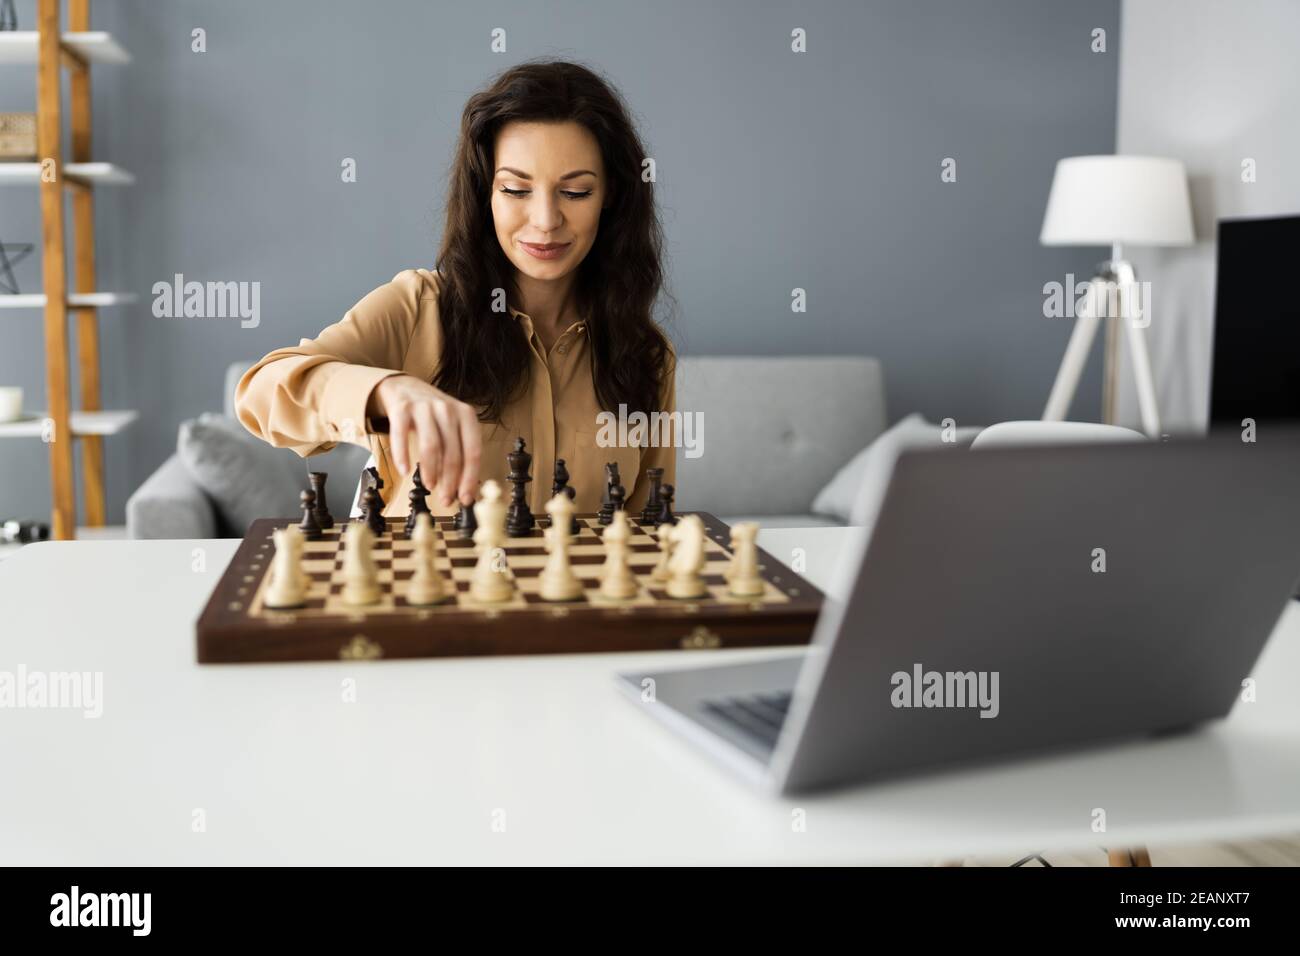 Computer chess game -Fotos und -Bildmaterial in hoher Auflösung